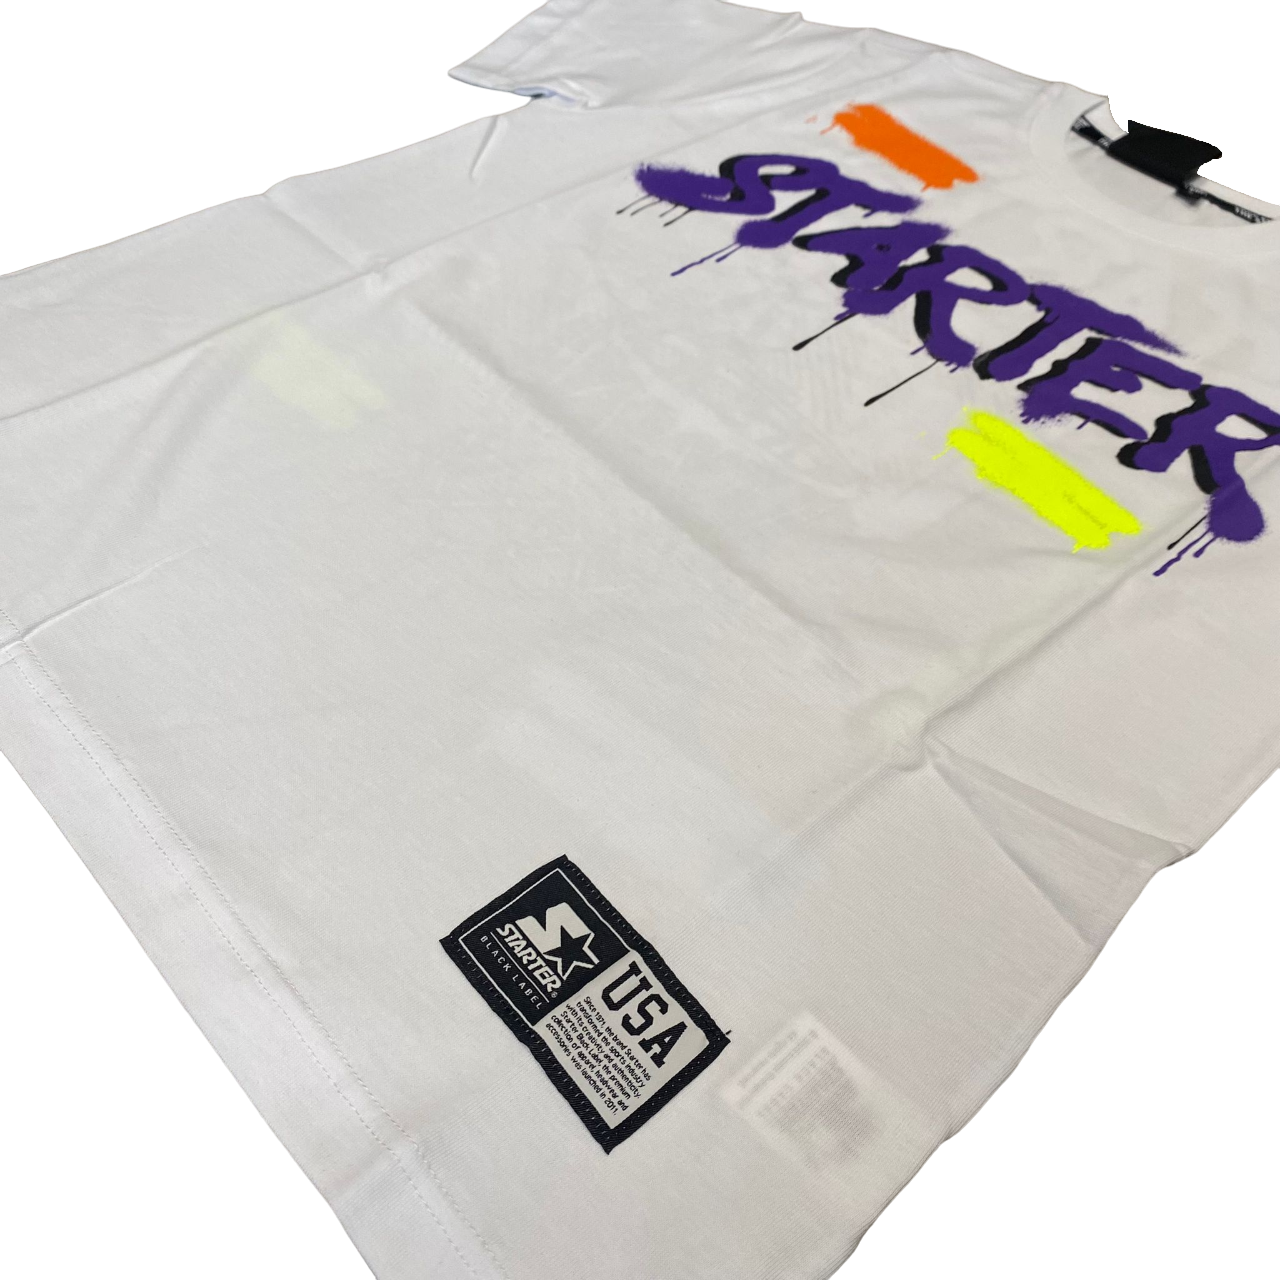 Starter short sleeve t-shirt for boys with print 1261 white